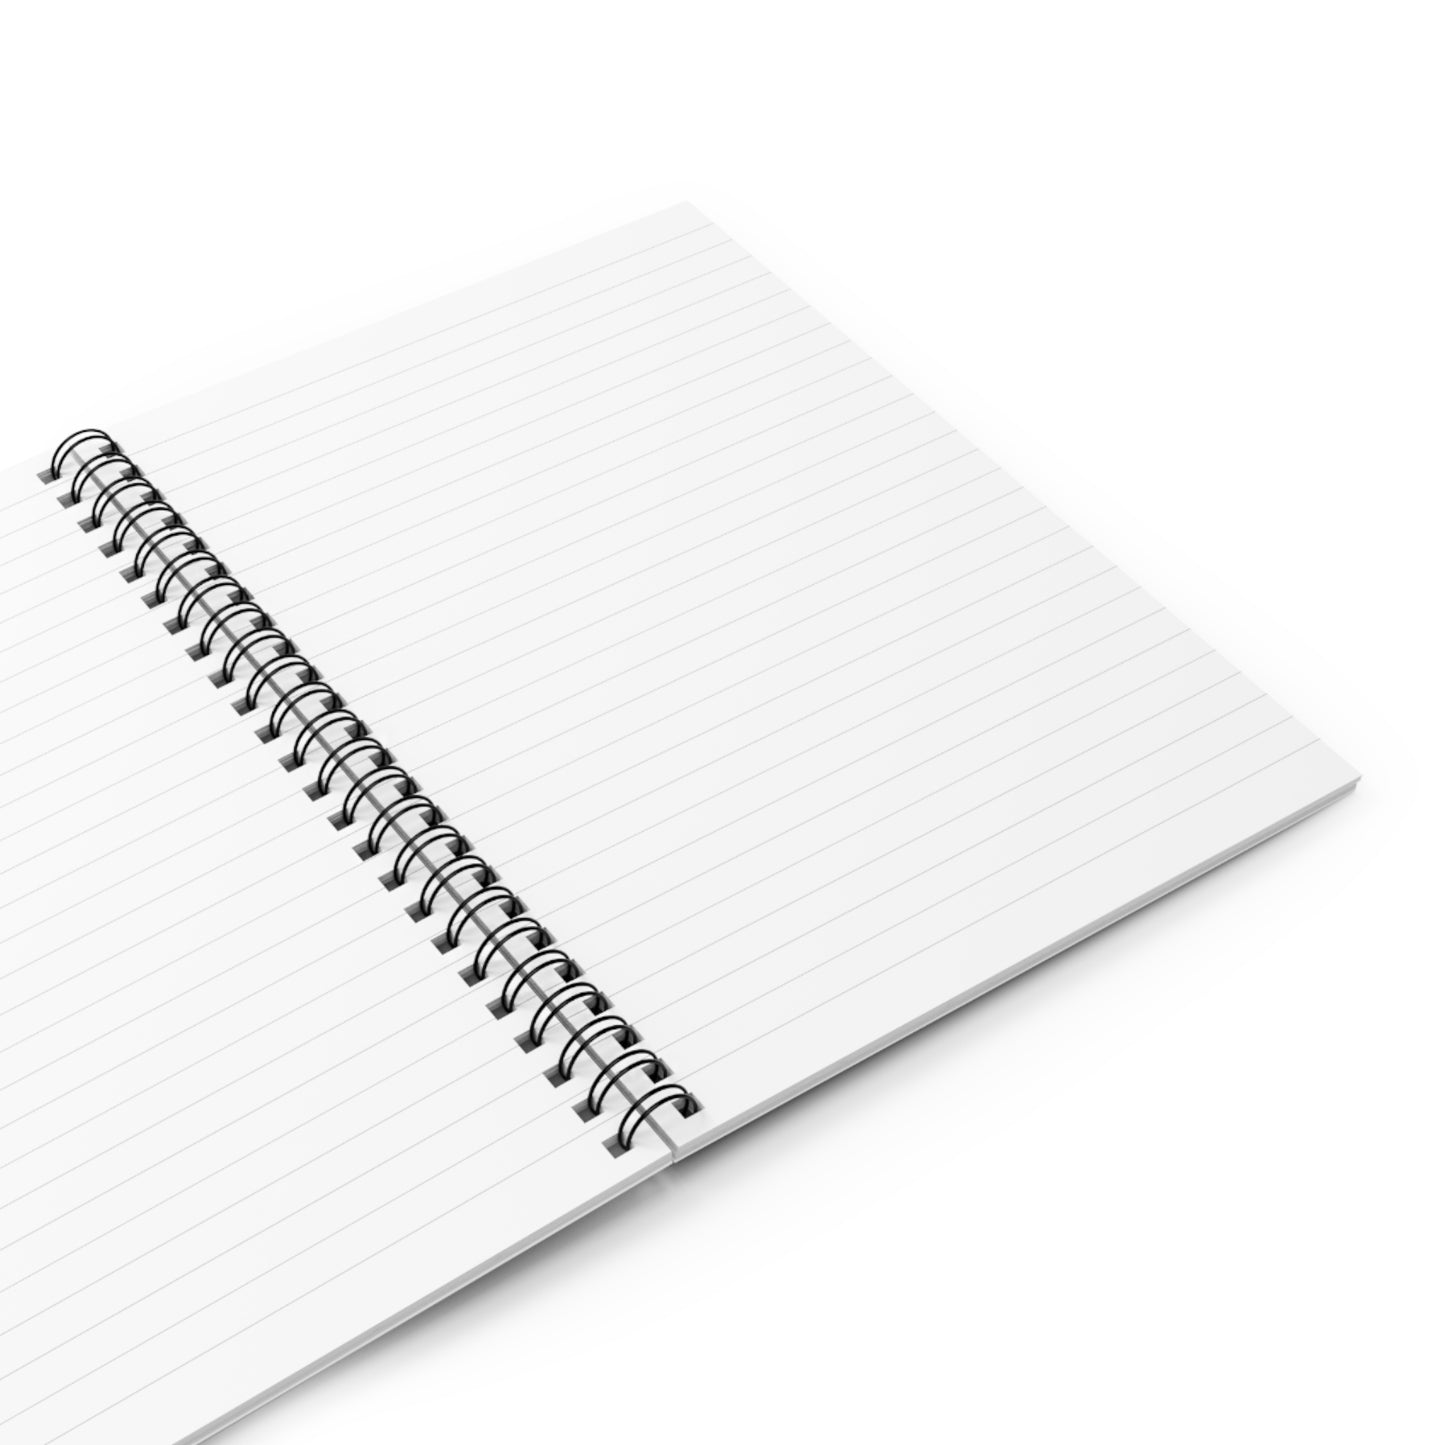 High Mind- Journal Notebook